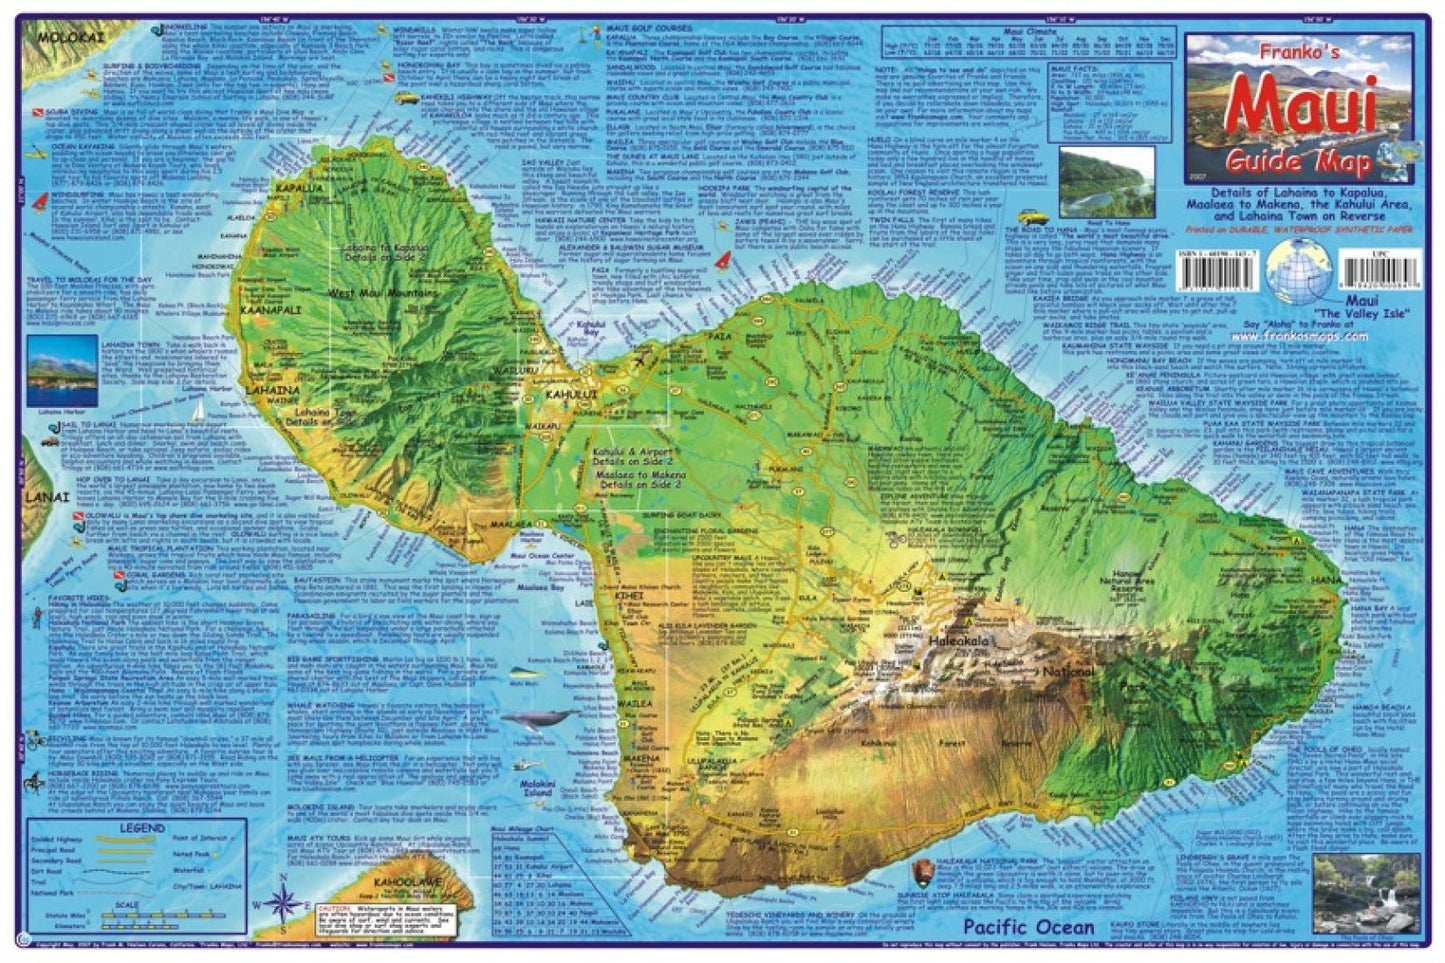 Franko's Maui guide